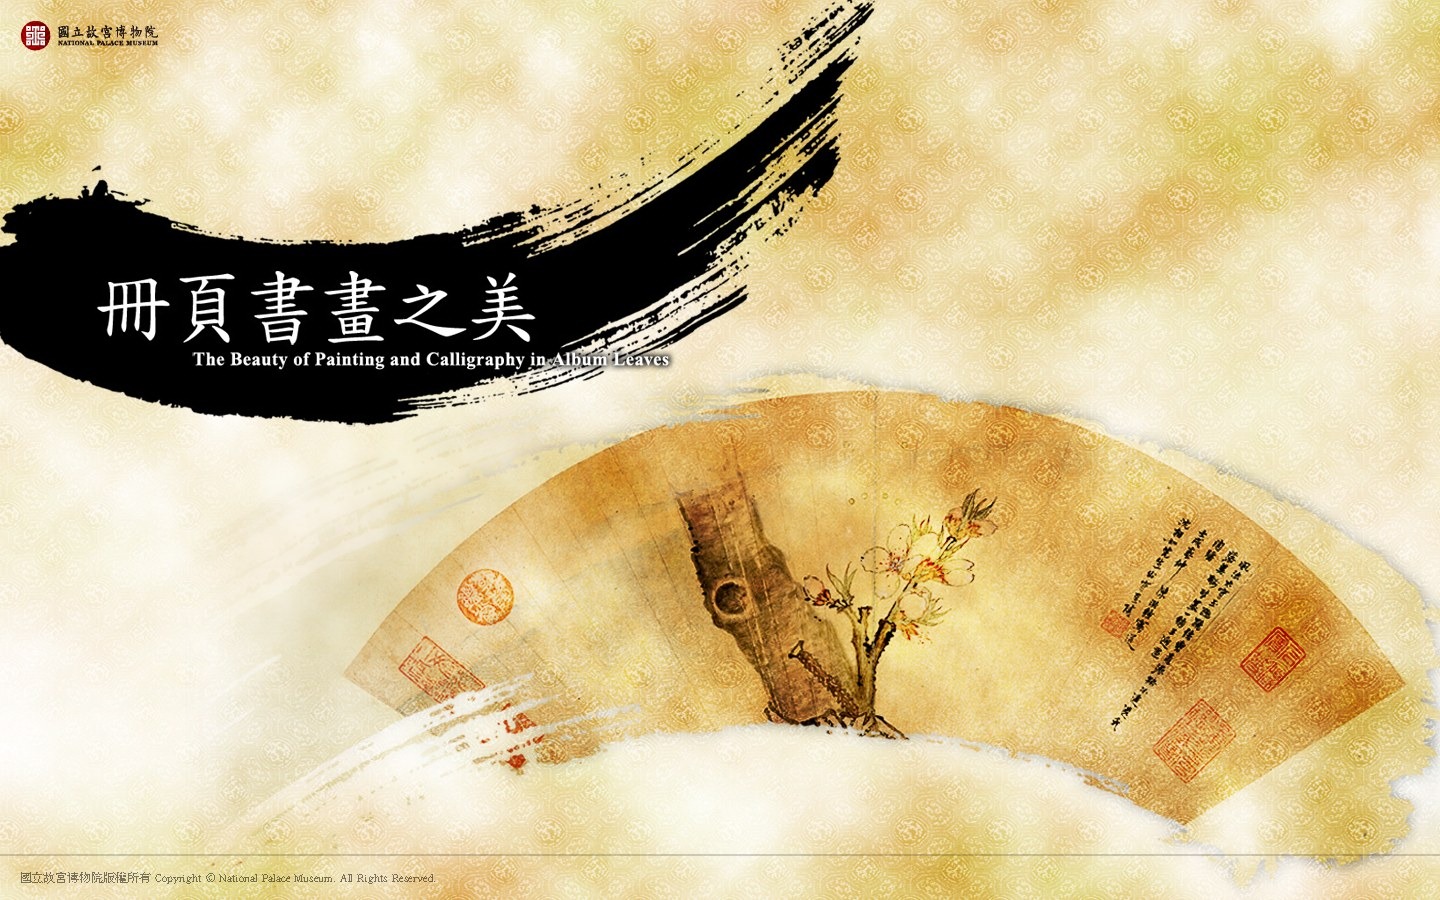 台北故宫博物院 文物展壁纸(二)15 - 1440x900